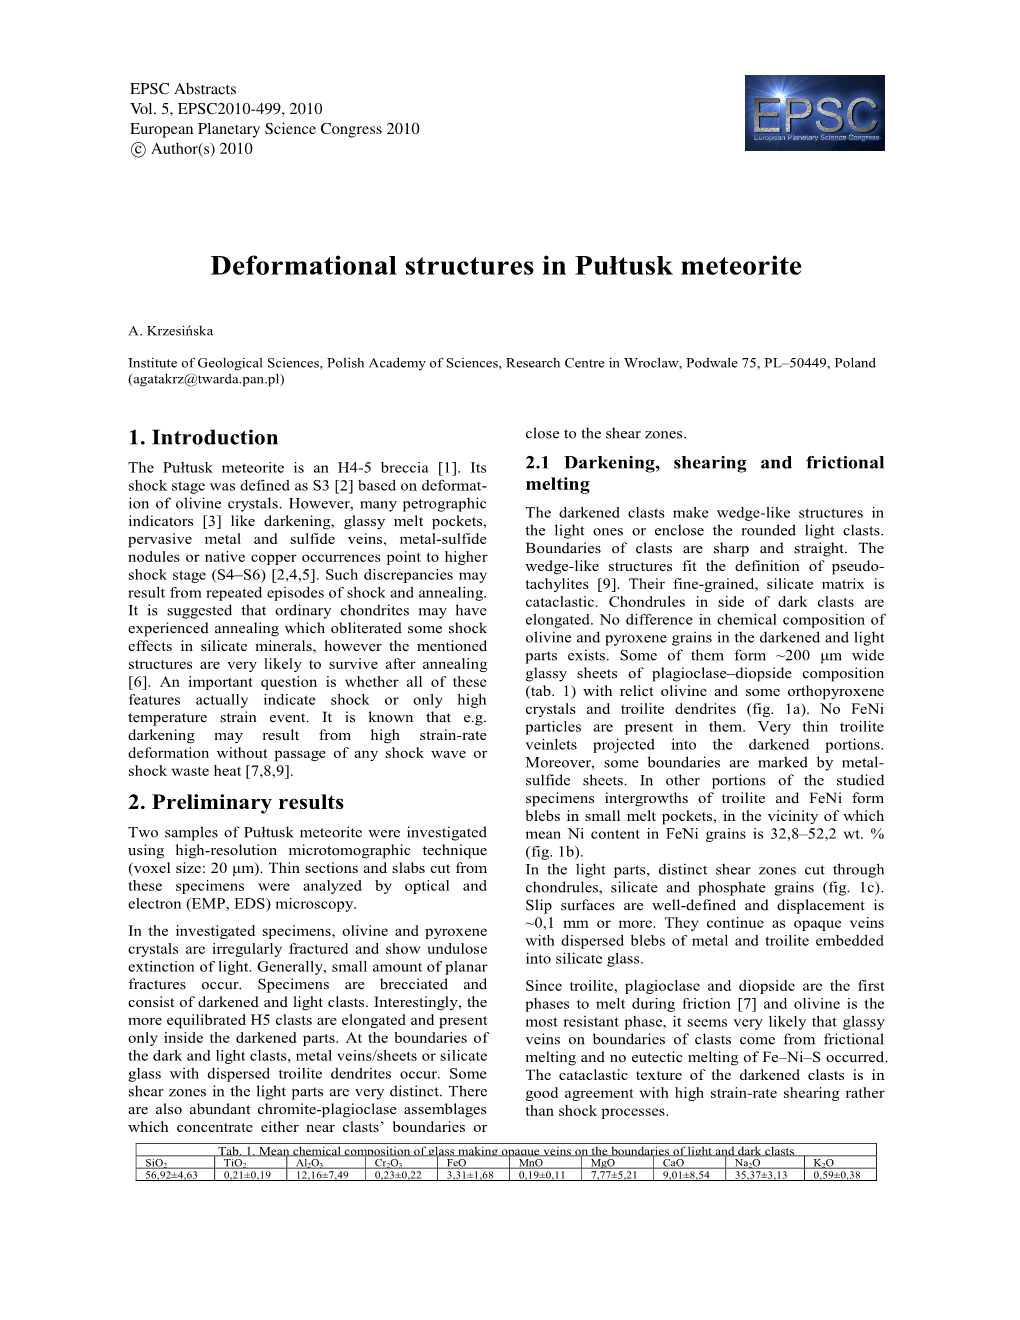 Deformational Structures in Pułtusk Meteorite